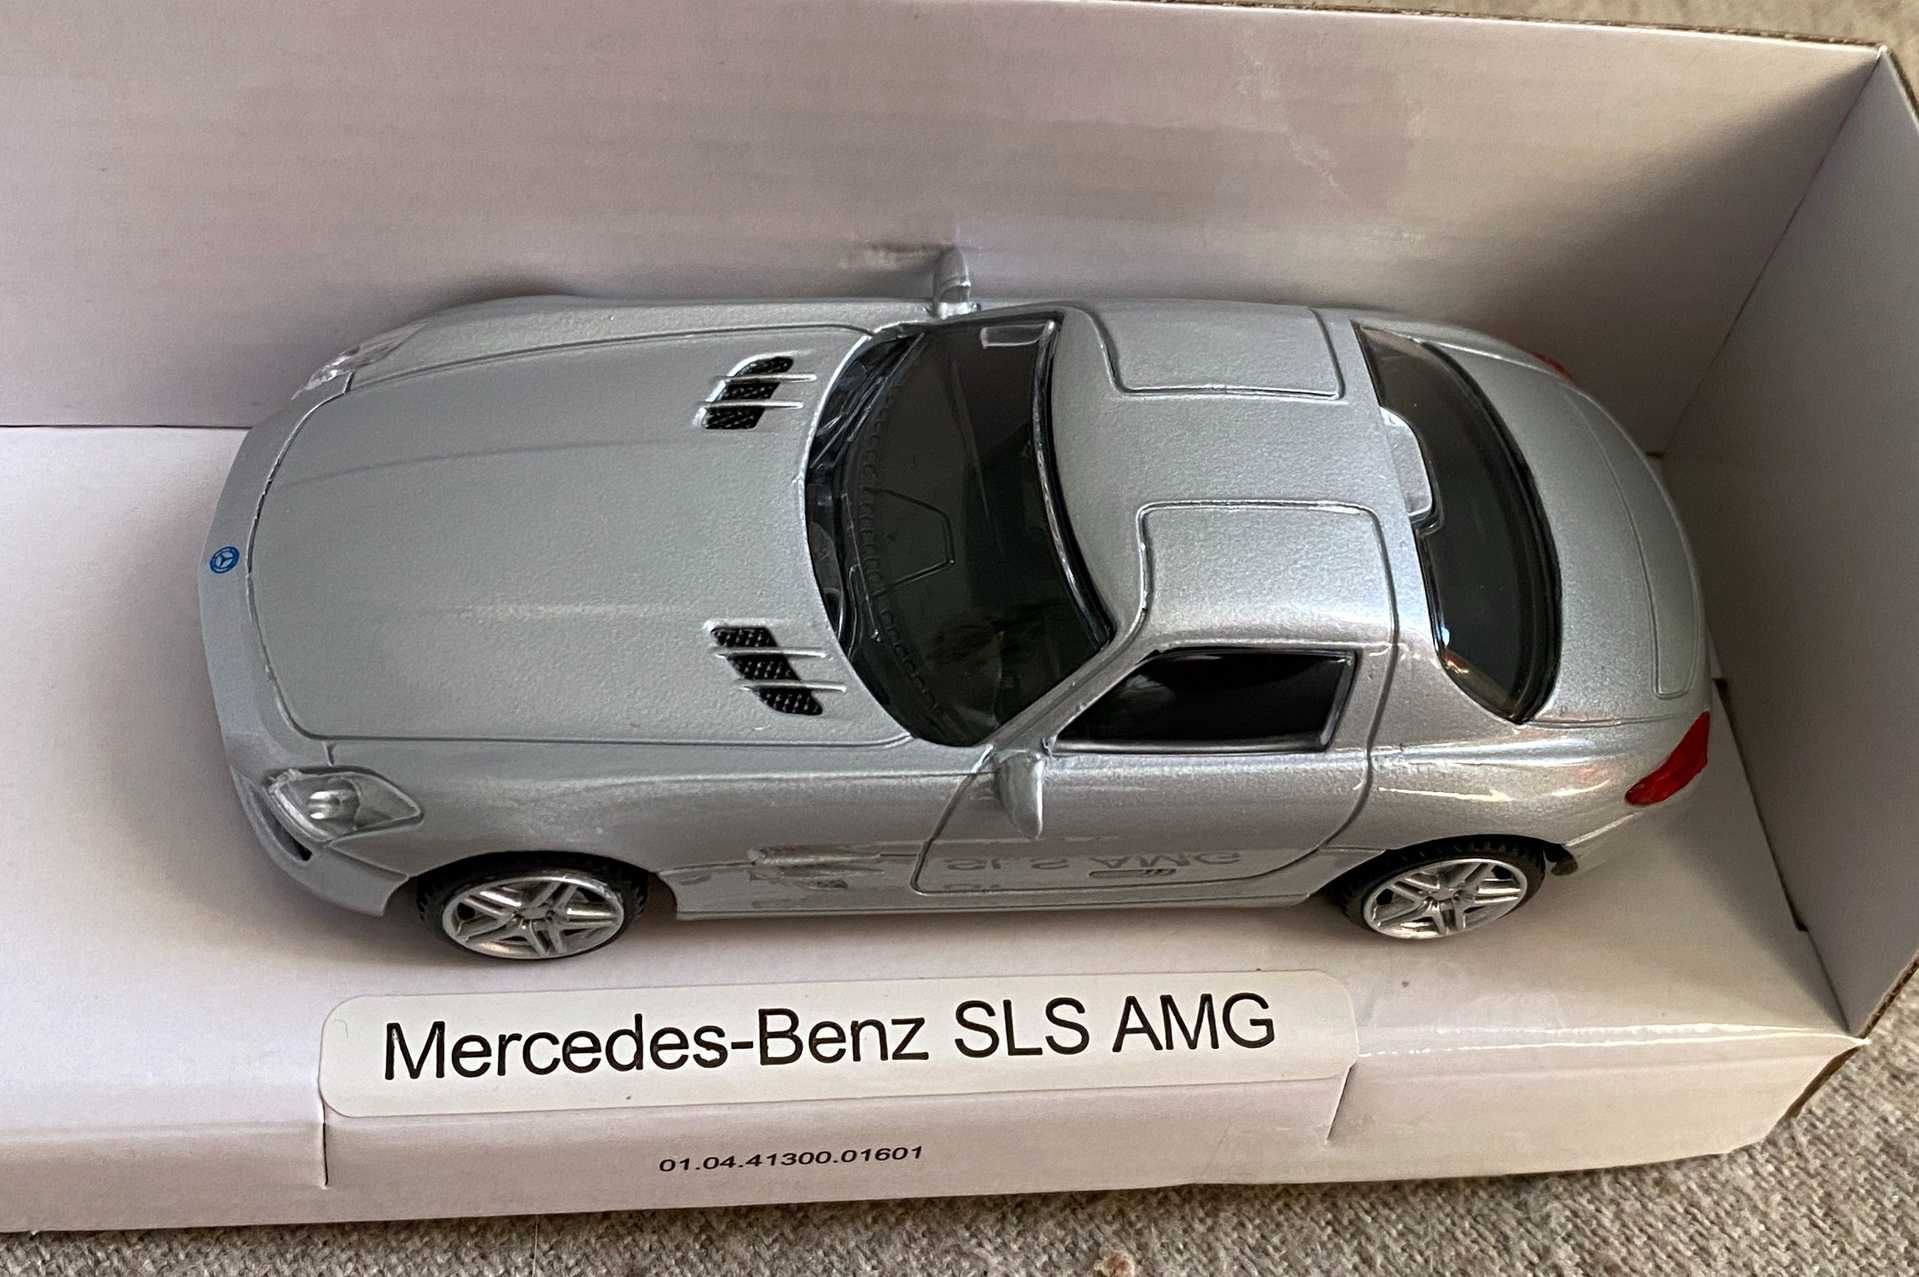 Macheta masinuta Mercedes-Benz SLS AMG scara 1 43 - metal - noua